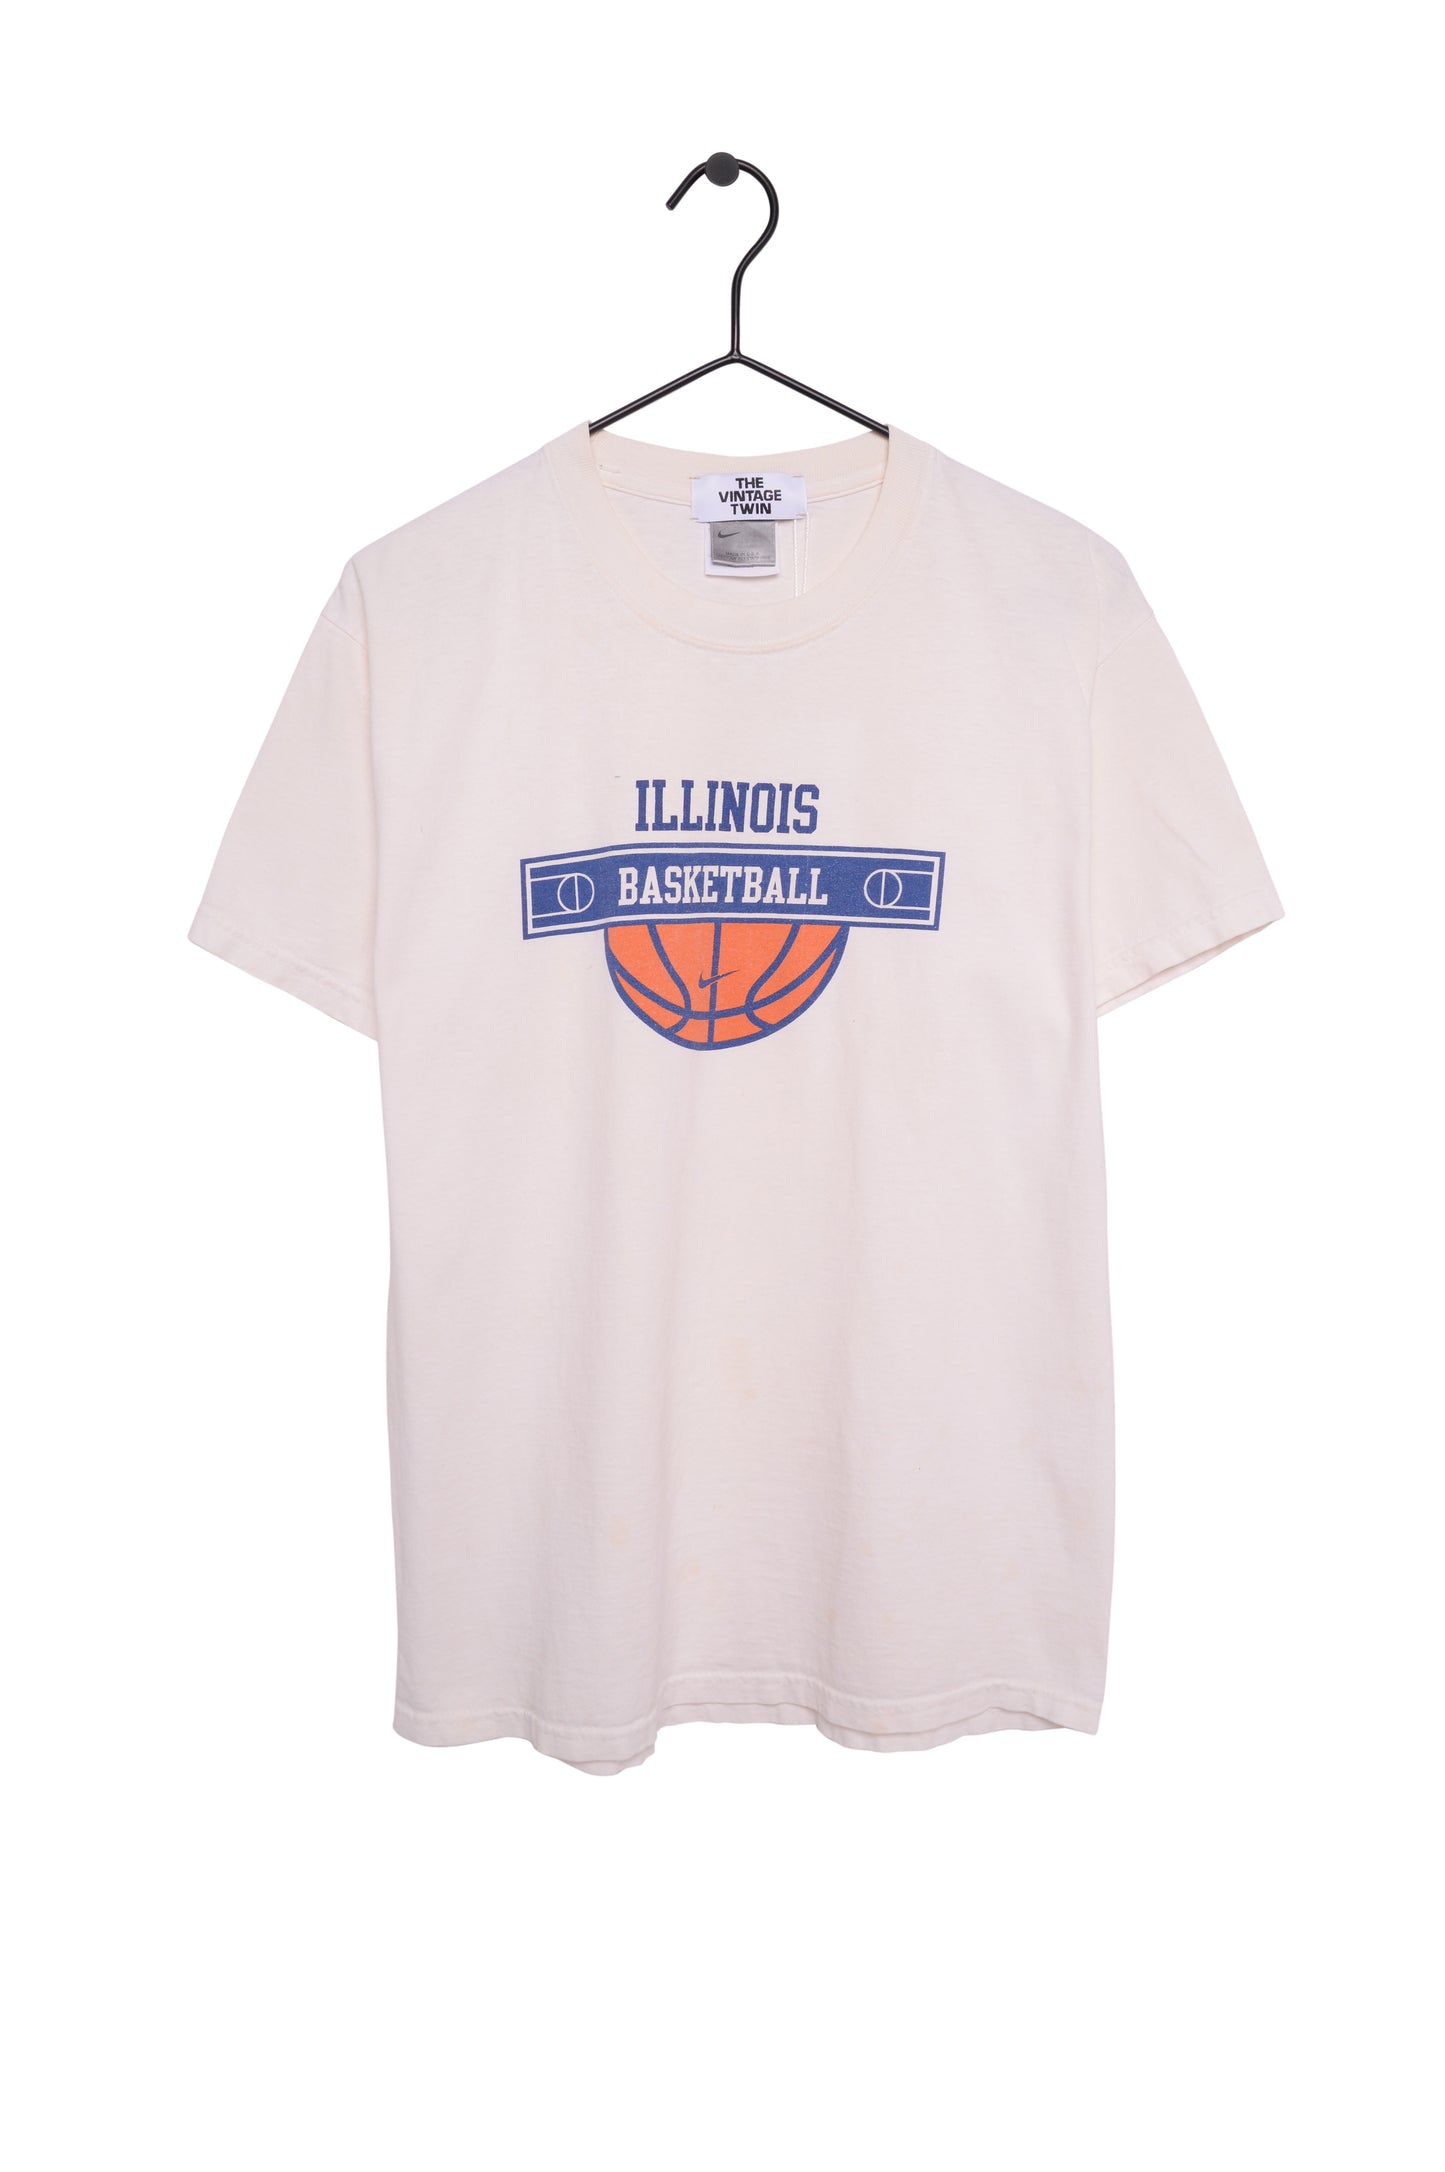 University of Illinois Basketball Tee USA